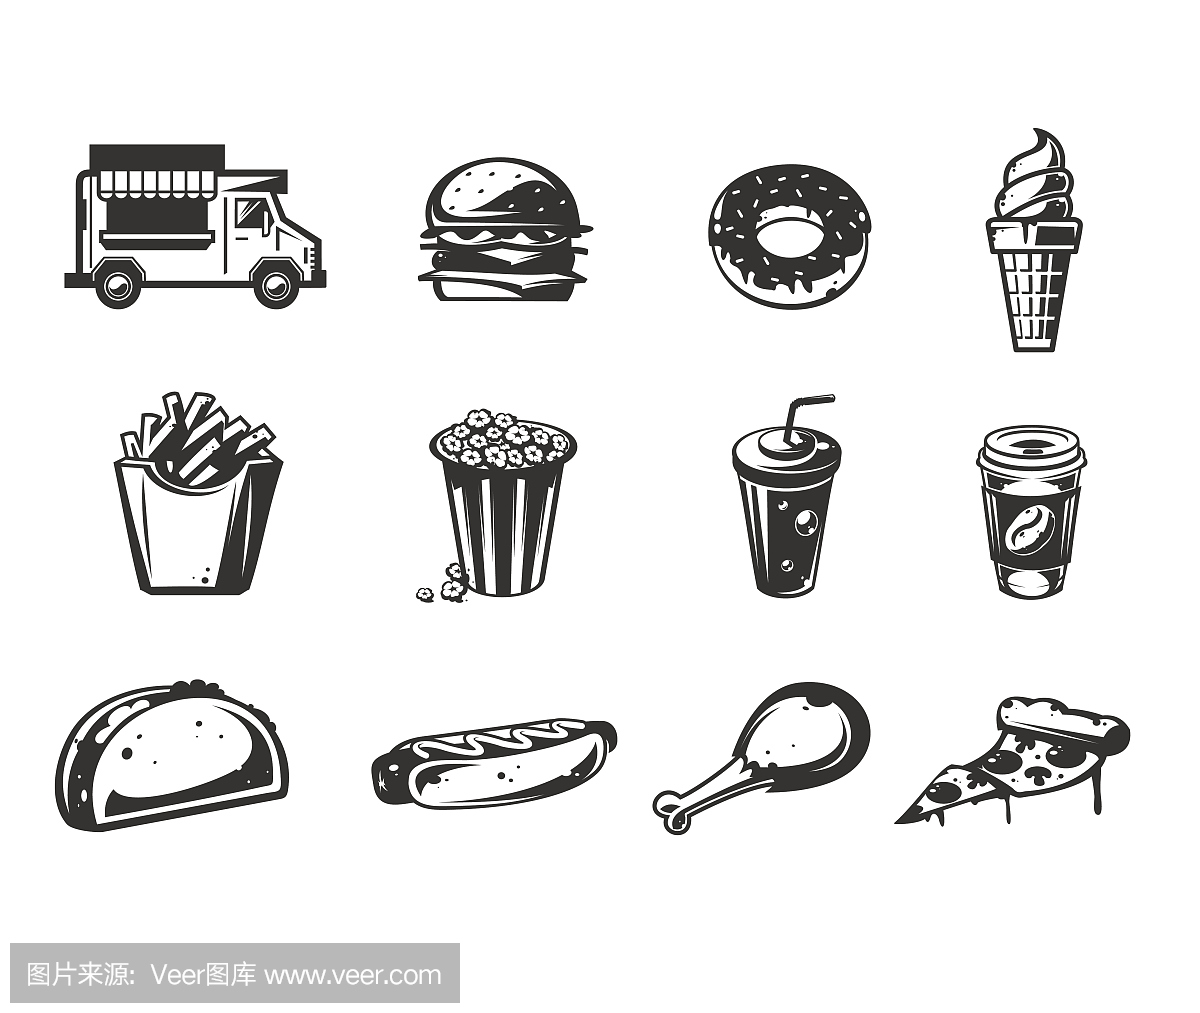 向量黑色图标-汽车快速送食品或食品卡车,一系列图标的各种快餐产品